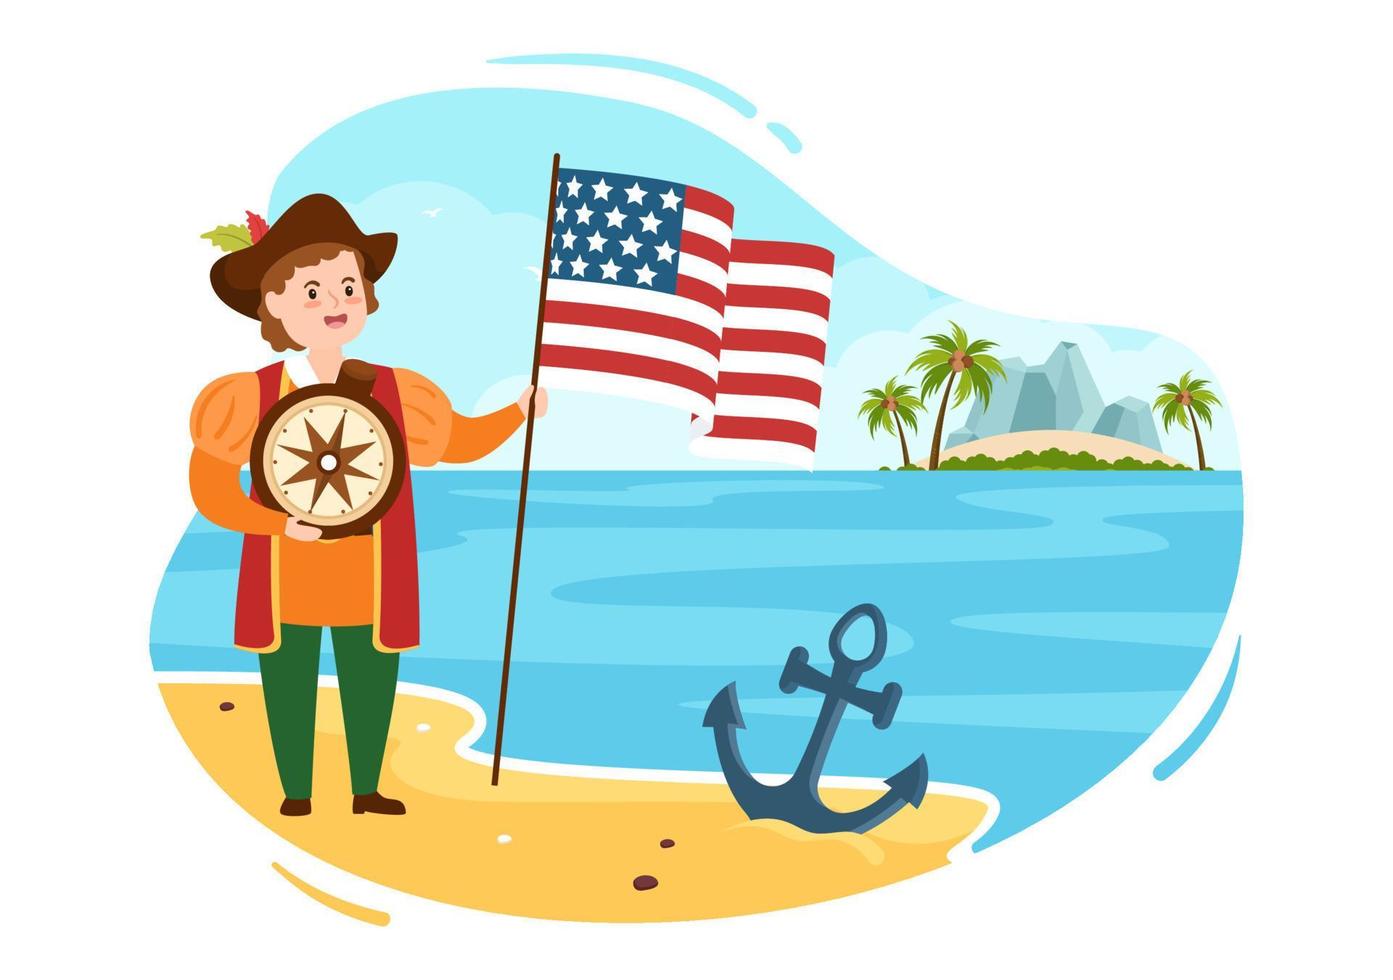 joyeux jour de columbus fête nationale illustration de dessin animé dessiné à la main avec des vagues bleues, une boussole, un navire et des drapeaux américains sur fond de style plat vecteur